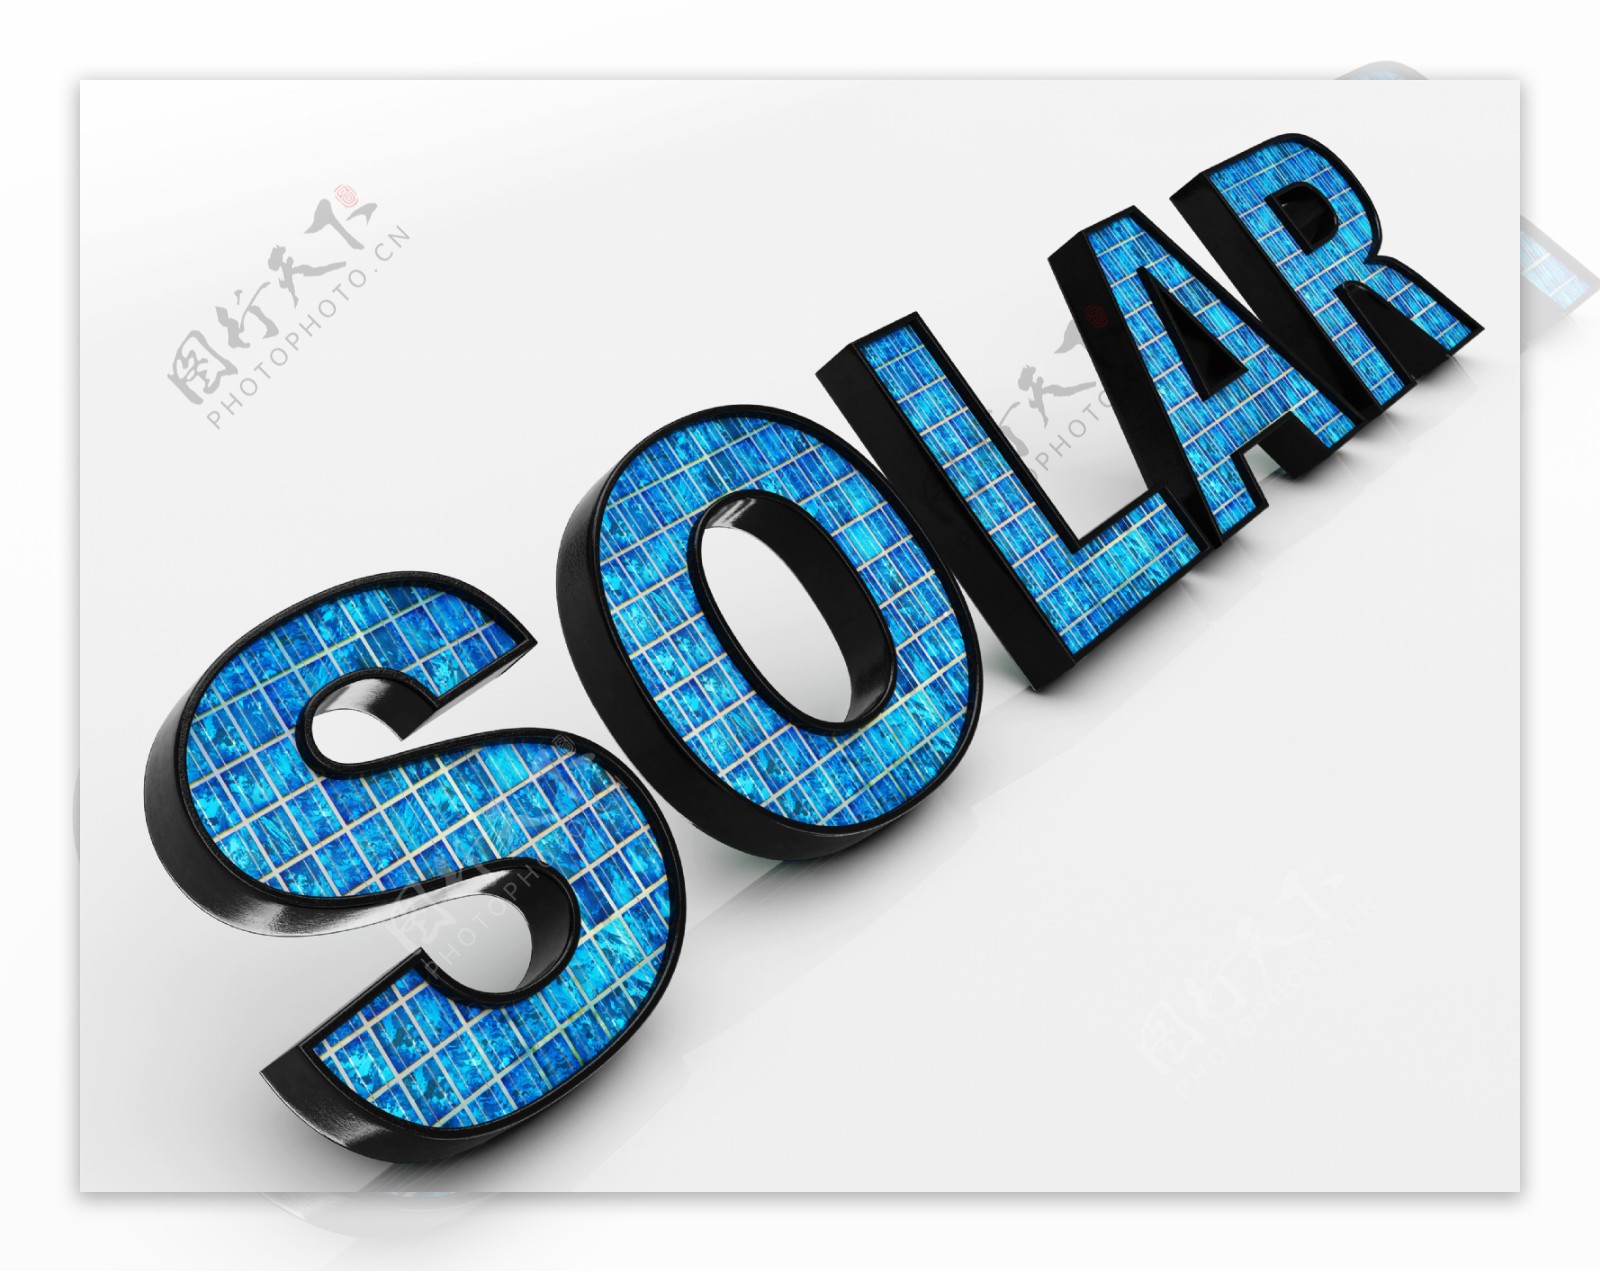 太阳能字显示替代能源和阳光